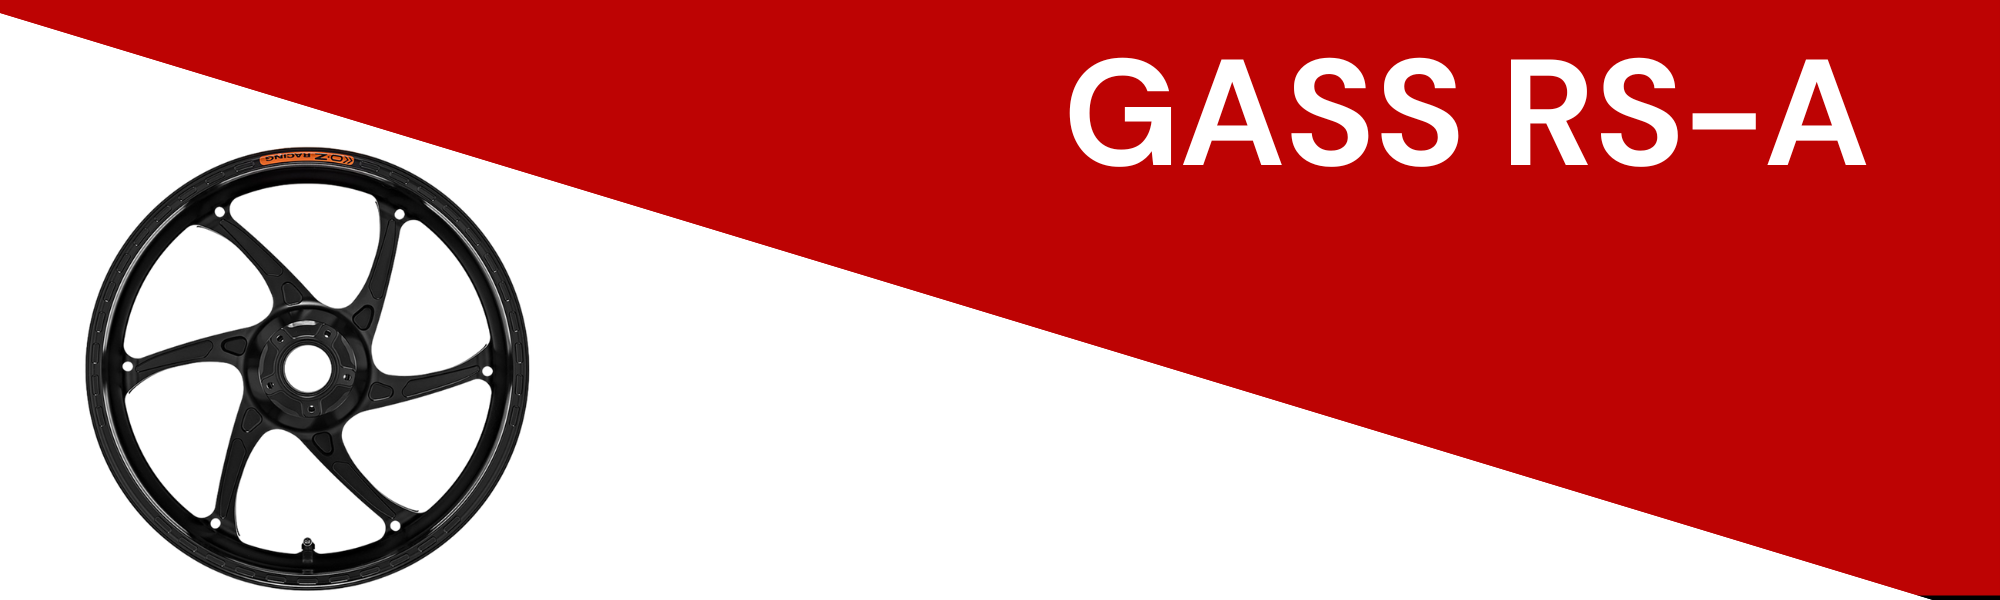 GASS RS-A